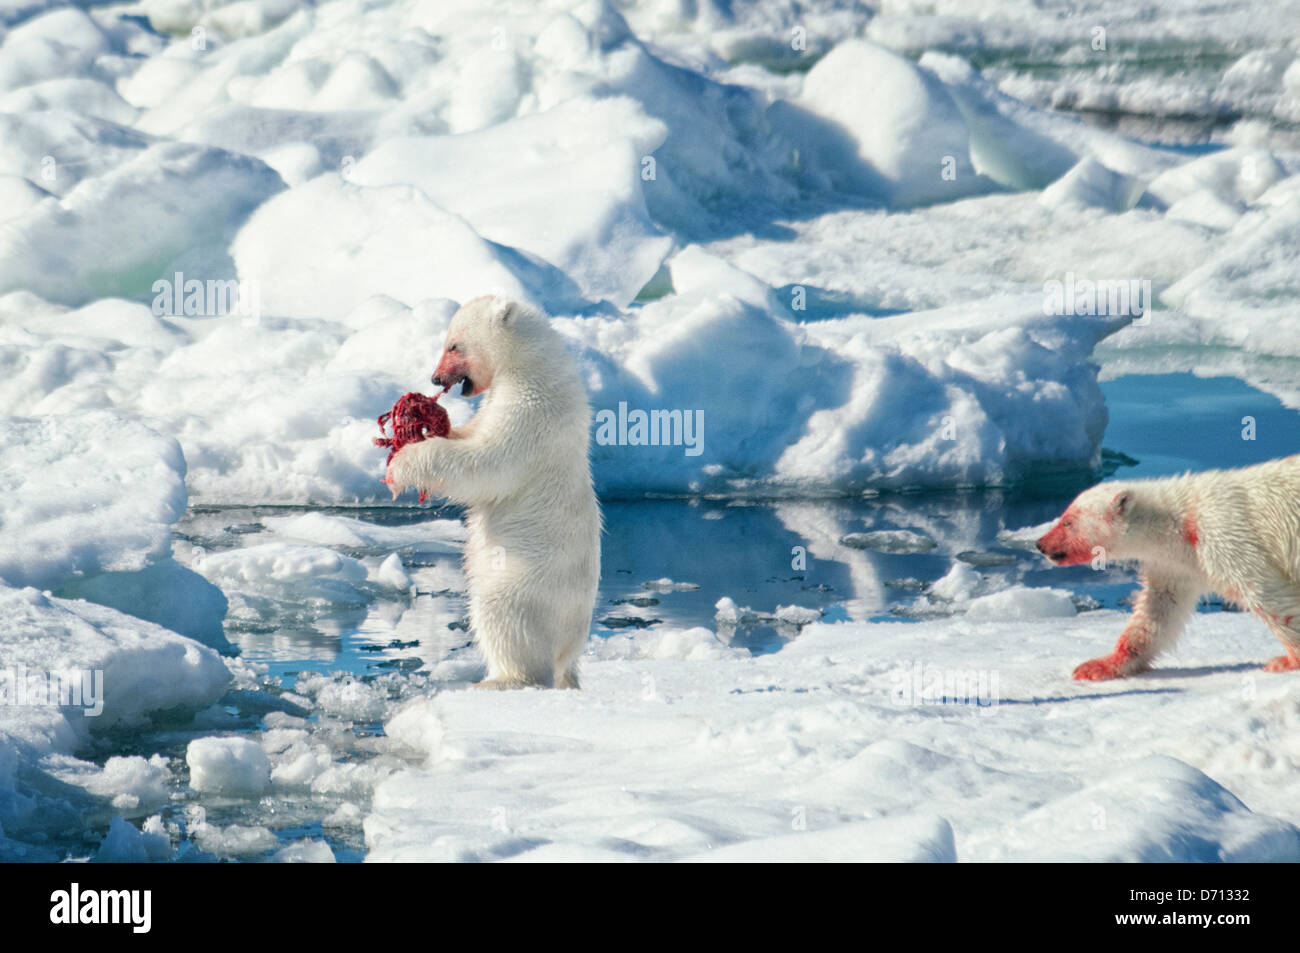 # 8 dans une série d'images d'une mère Ours blanc, Ursus maritimus, traquant un sceau pour nourrir ses deux oursons, Svalbard, Norvège. Recherche 'PBHunt' pour tous. Banque D'Images